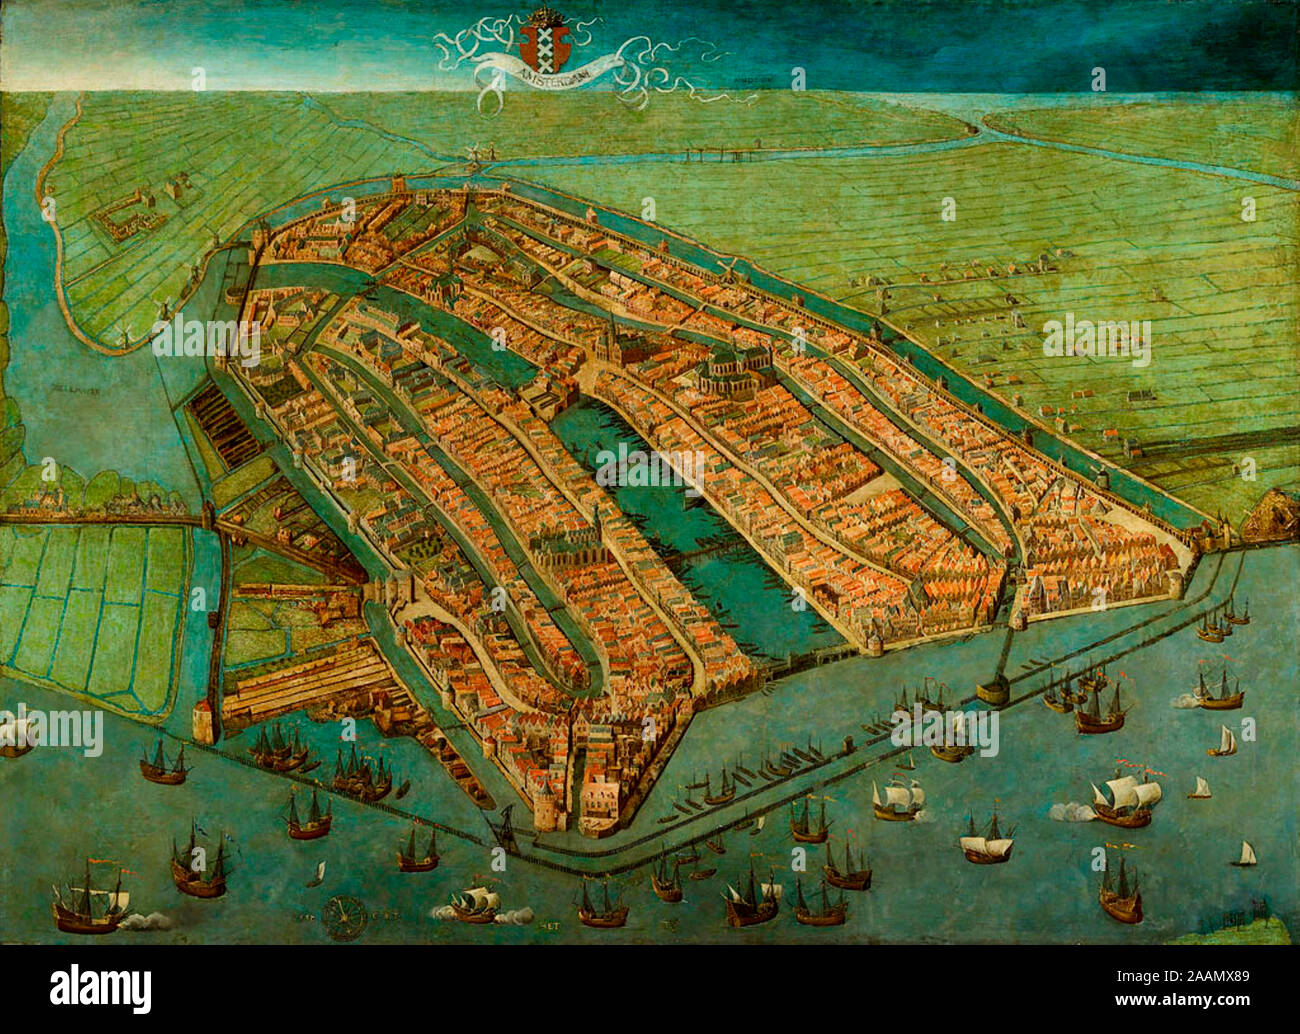 Vogelperspektive von Amsterdam - Älteste erhaltene Karte von Amsterdam, beendete mittelalterlichen Mauern der Stadt, Türme und Tore. Wie in den meisten alten Karten von Amsterdam ist die Stadt von der IJ dargestellt, so dass der Blick nach Süden gerichtet ist eher als im Norden - Cornelis Anthonisz, ca. 1538 Stockfoto